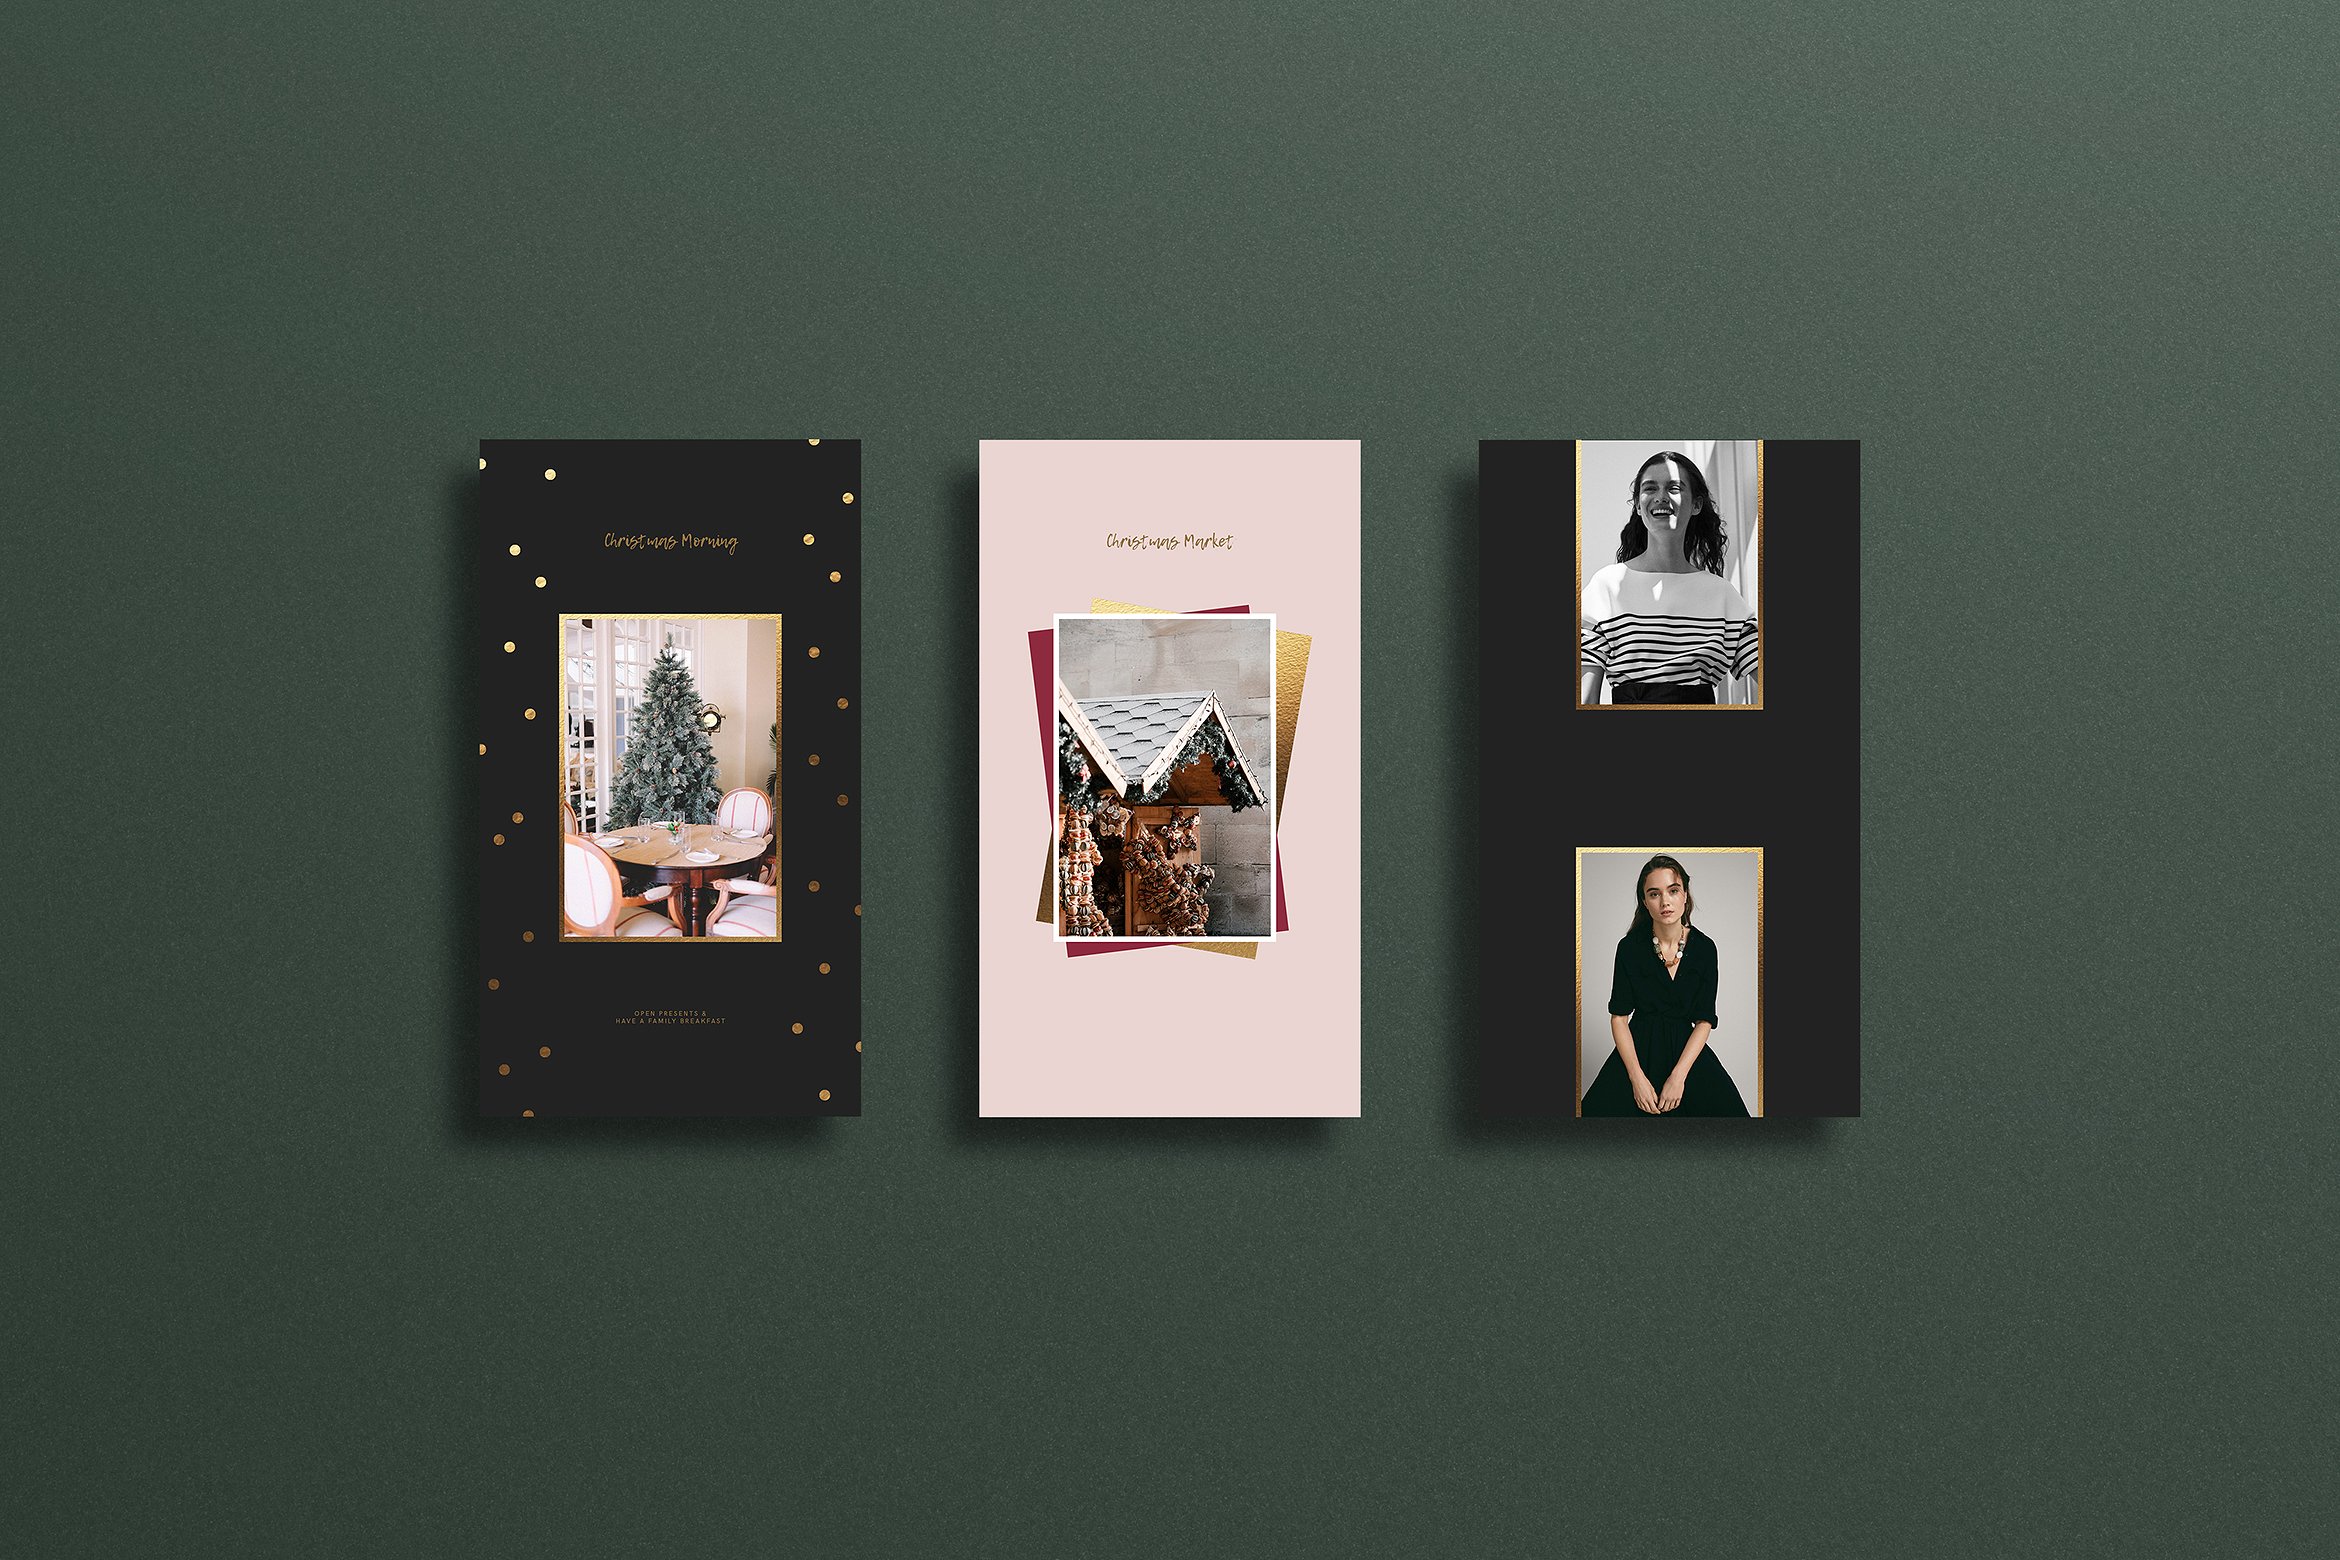 高端的圣诞节假日摄影Instagram故事模板 High-End Christmas Holiday Photography Instagram Story Template插图4